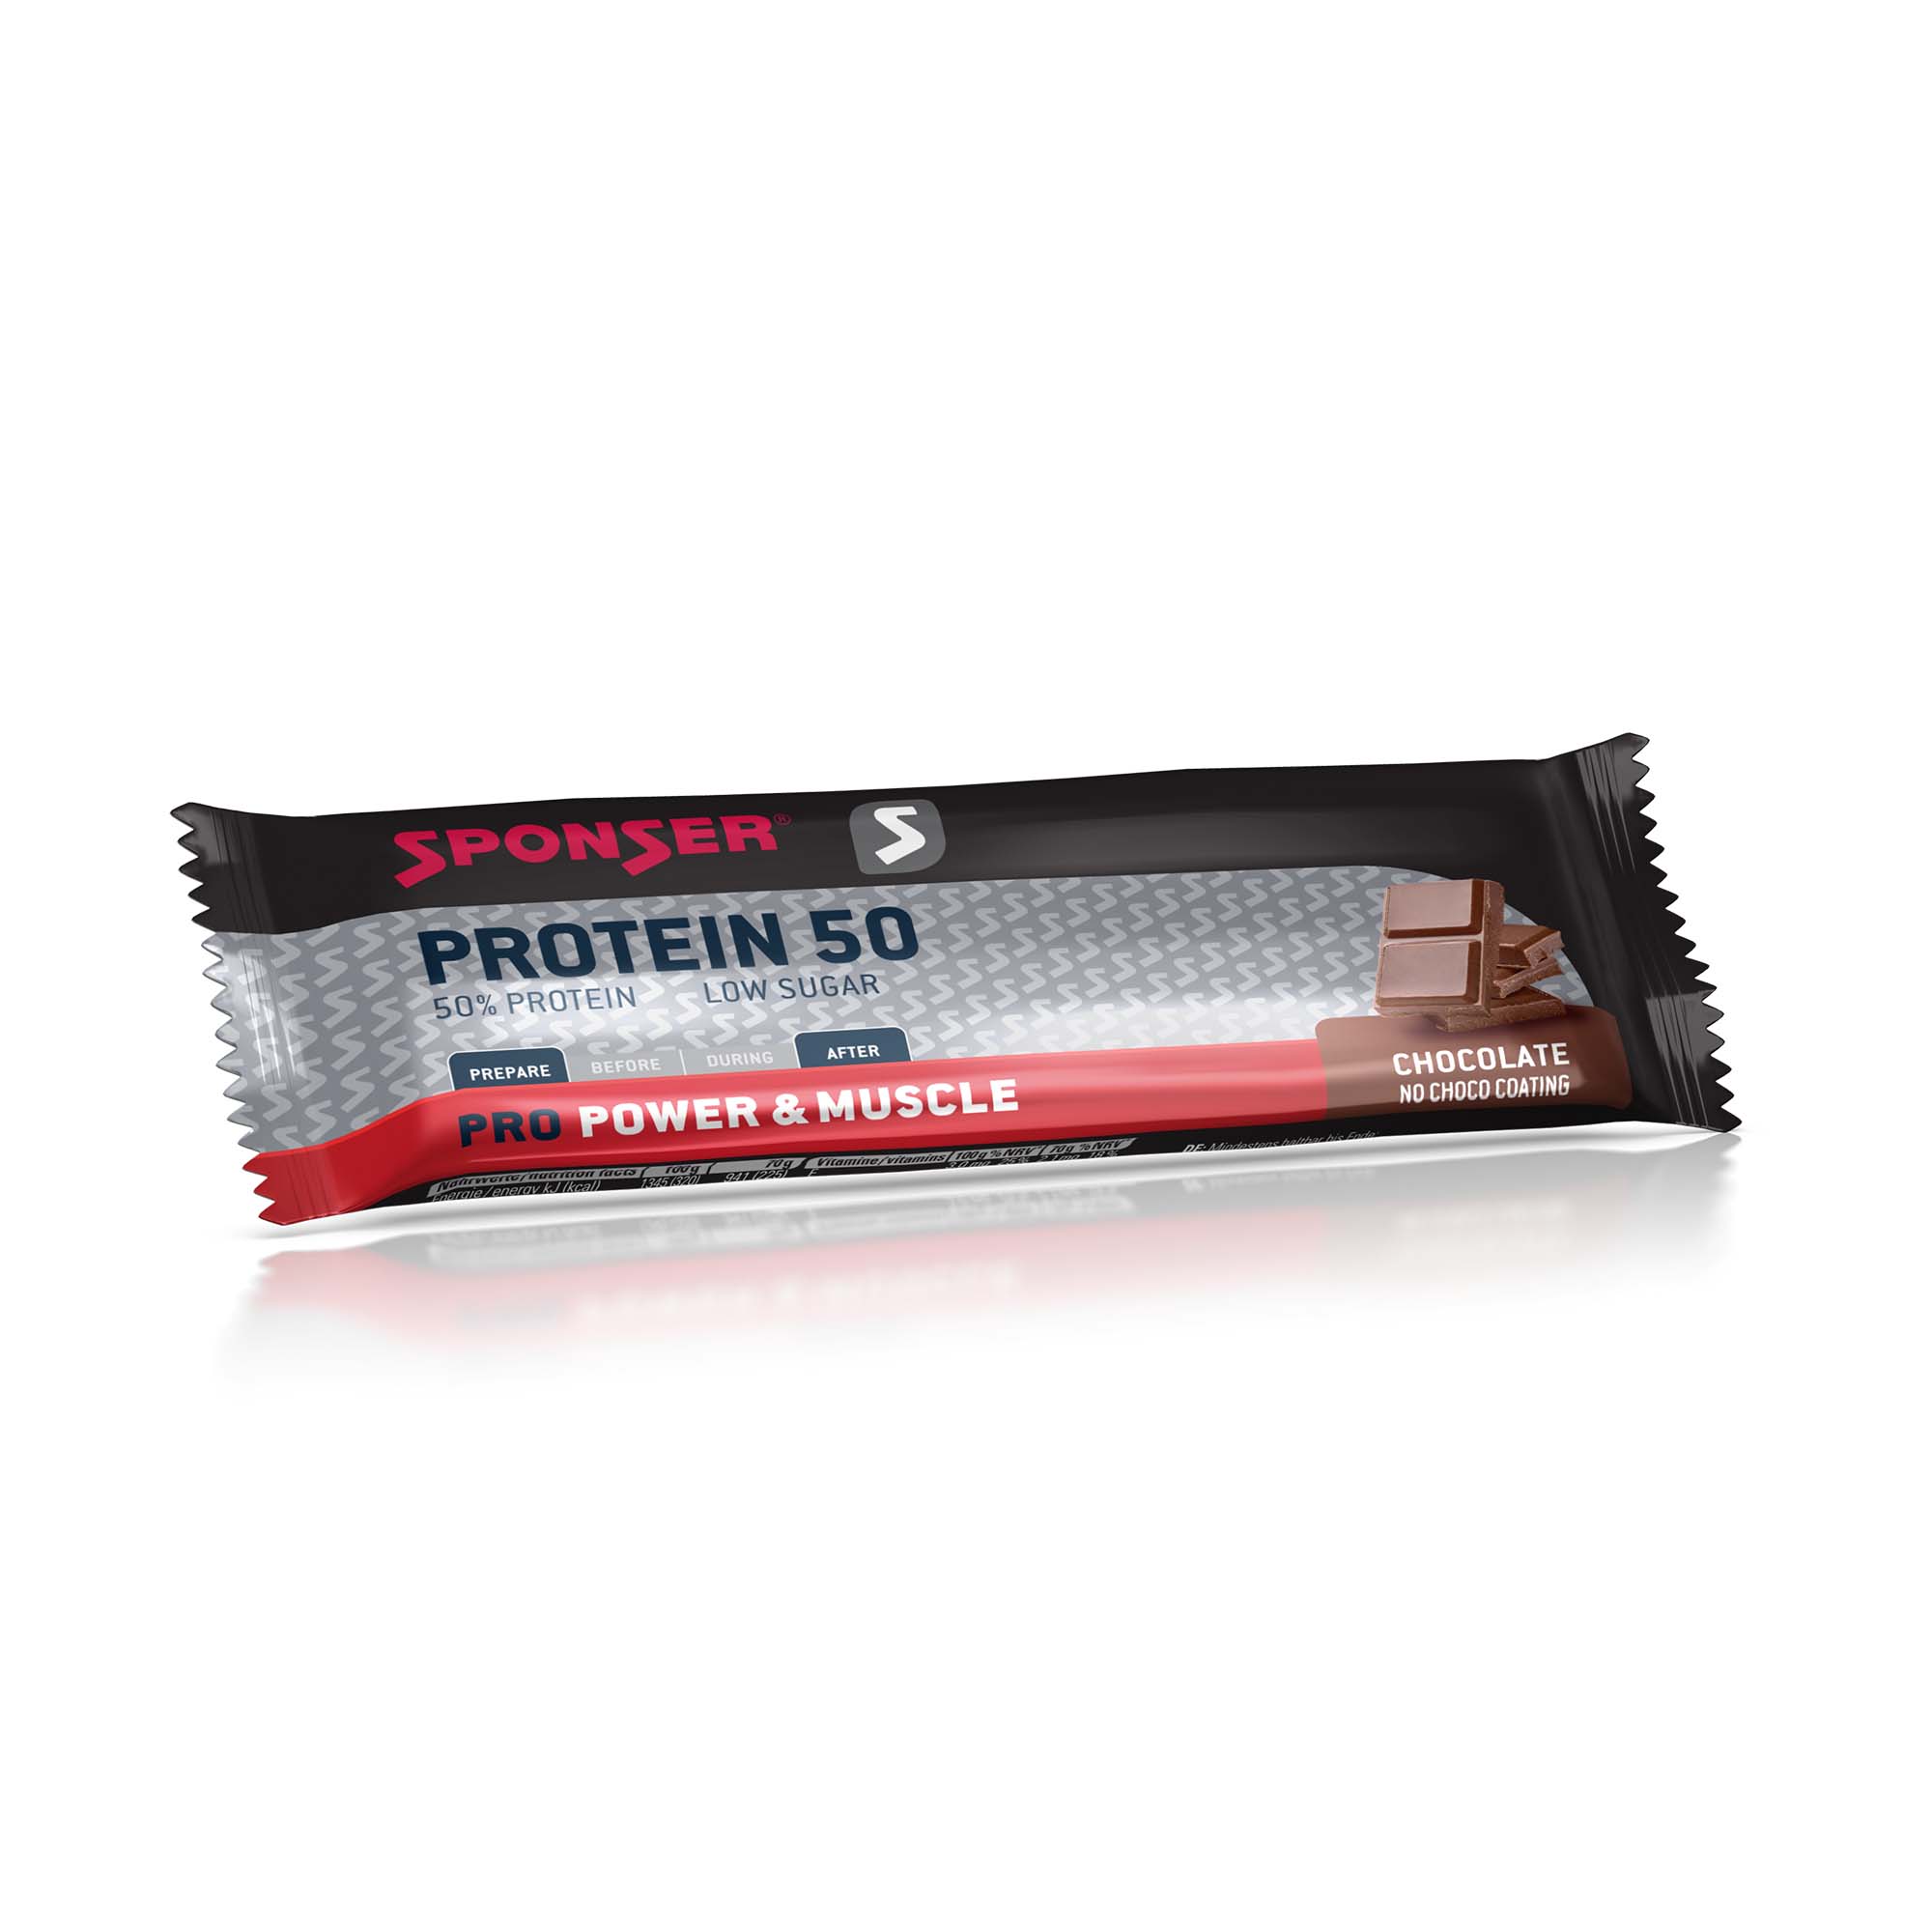 Sponser Pro Protein 50